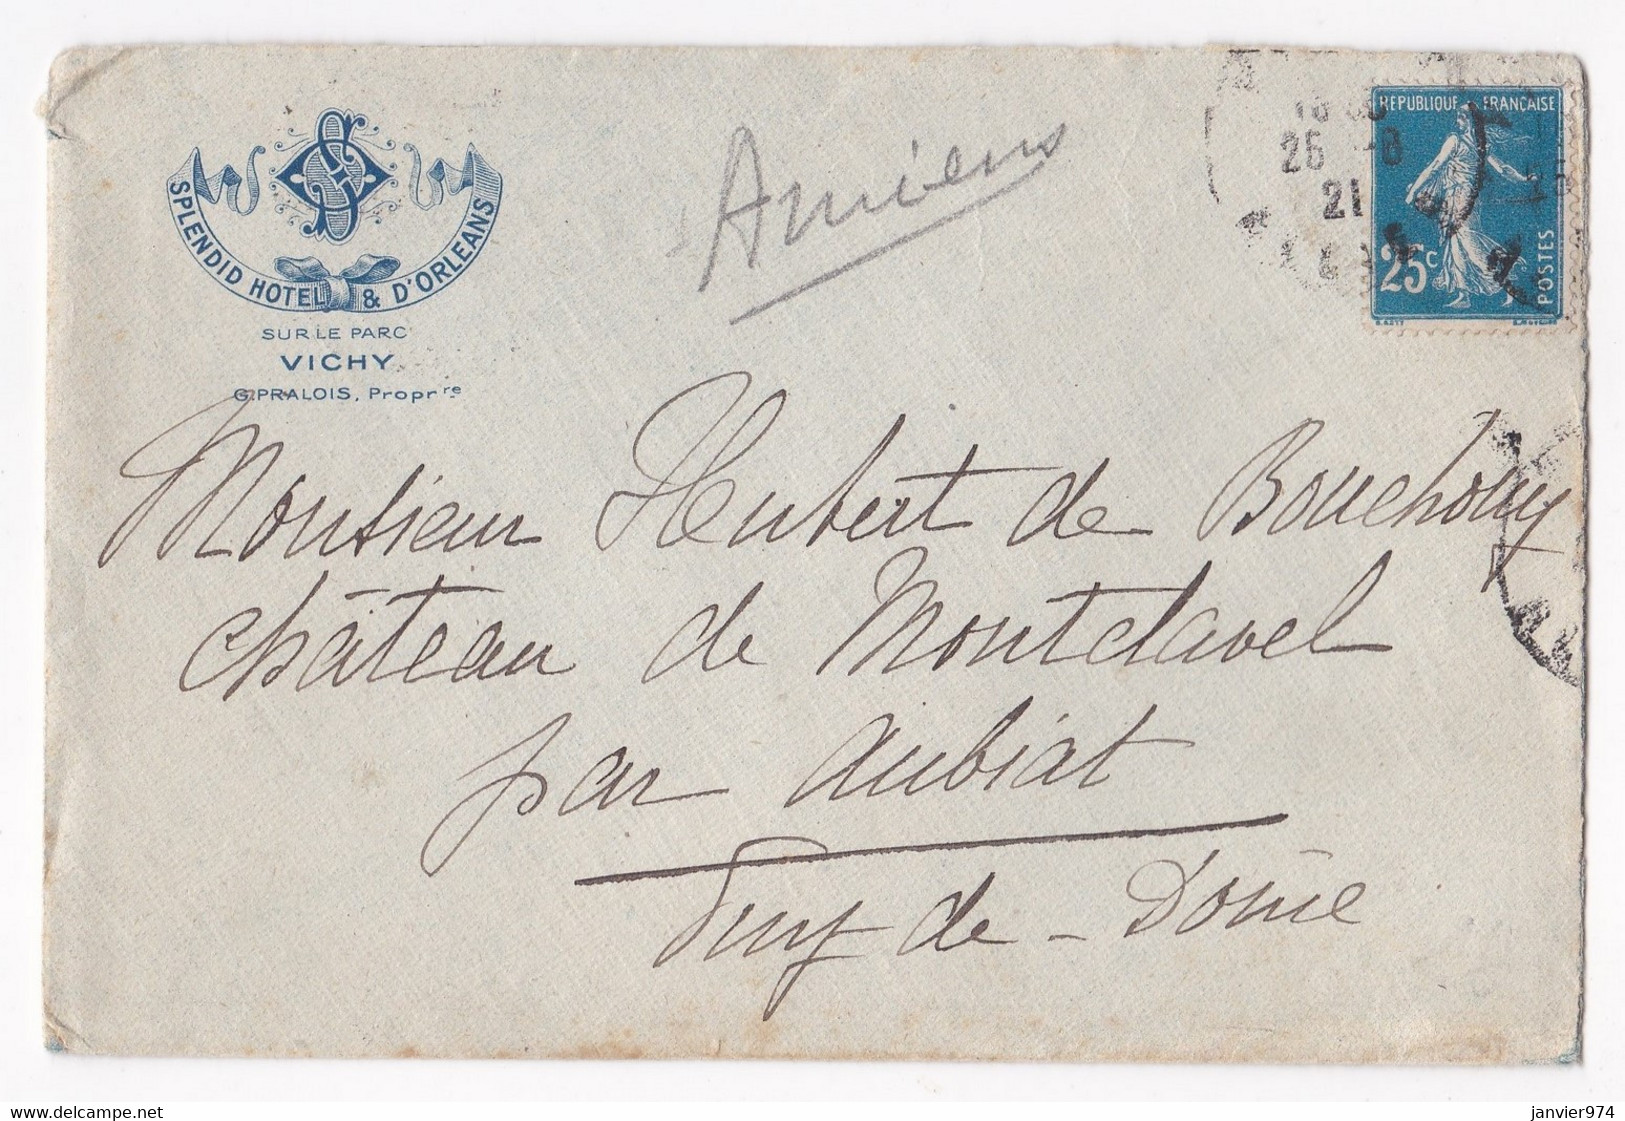 Enveloppe 1921, Splendid Hôtel & D’Orléans Vichy Pour Le Château De Montclavel Aubiat - Brieven En Documenten